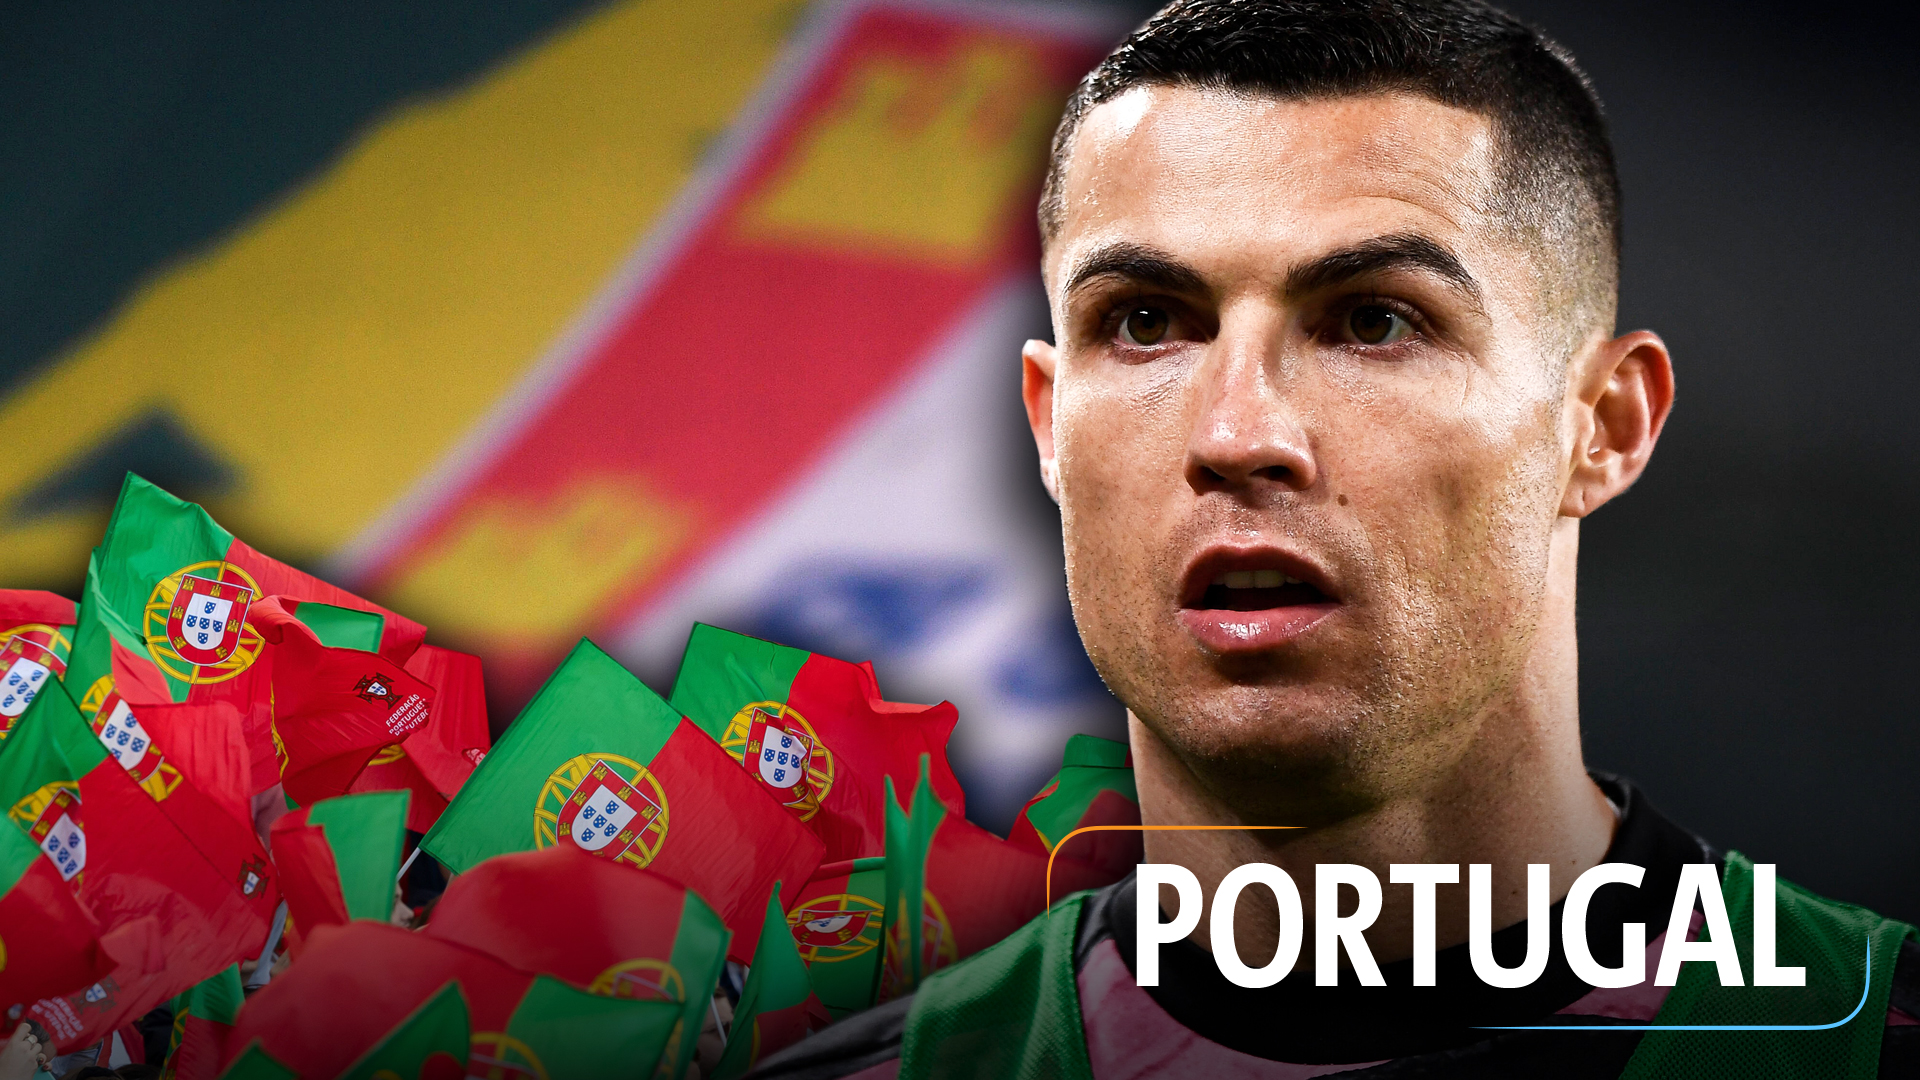 Teaserbild für die portugiesische Nationalmannschaft